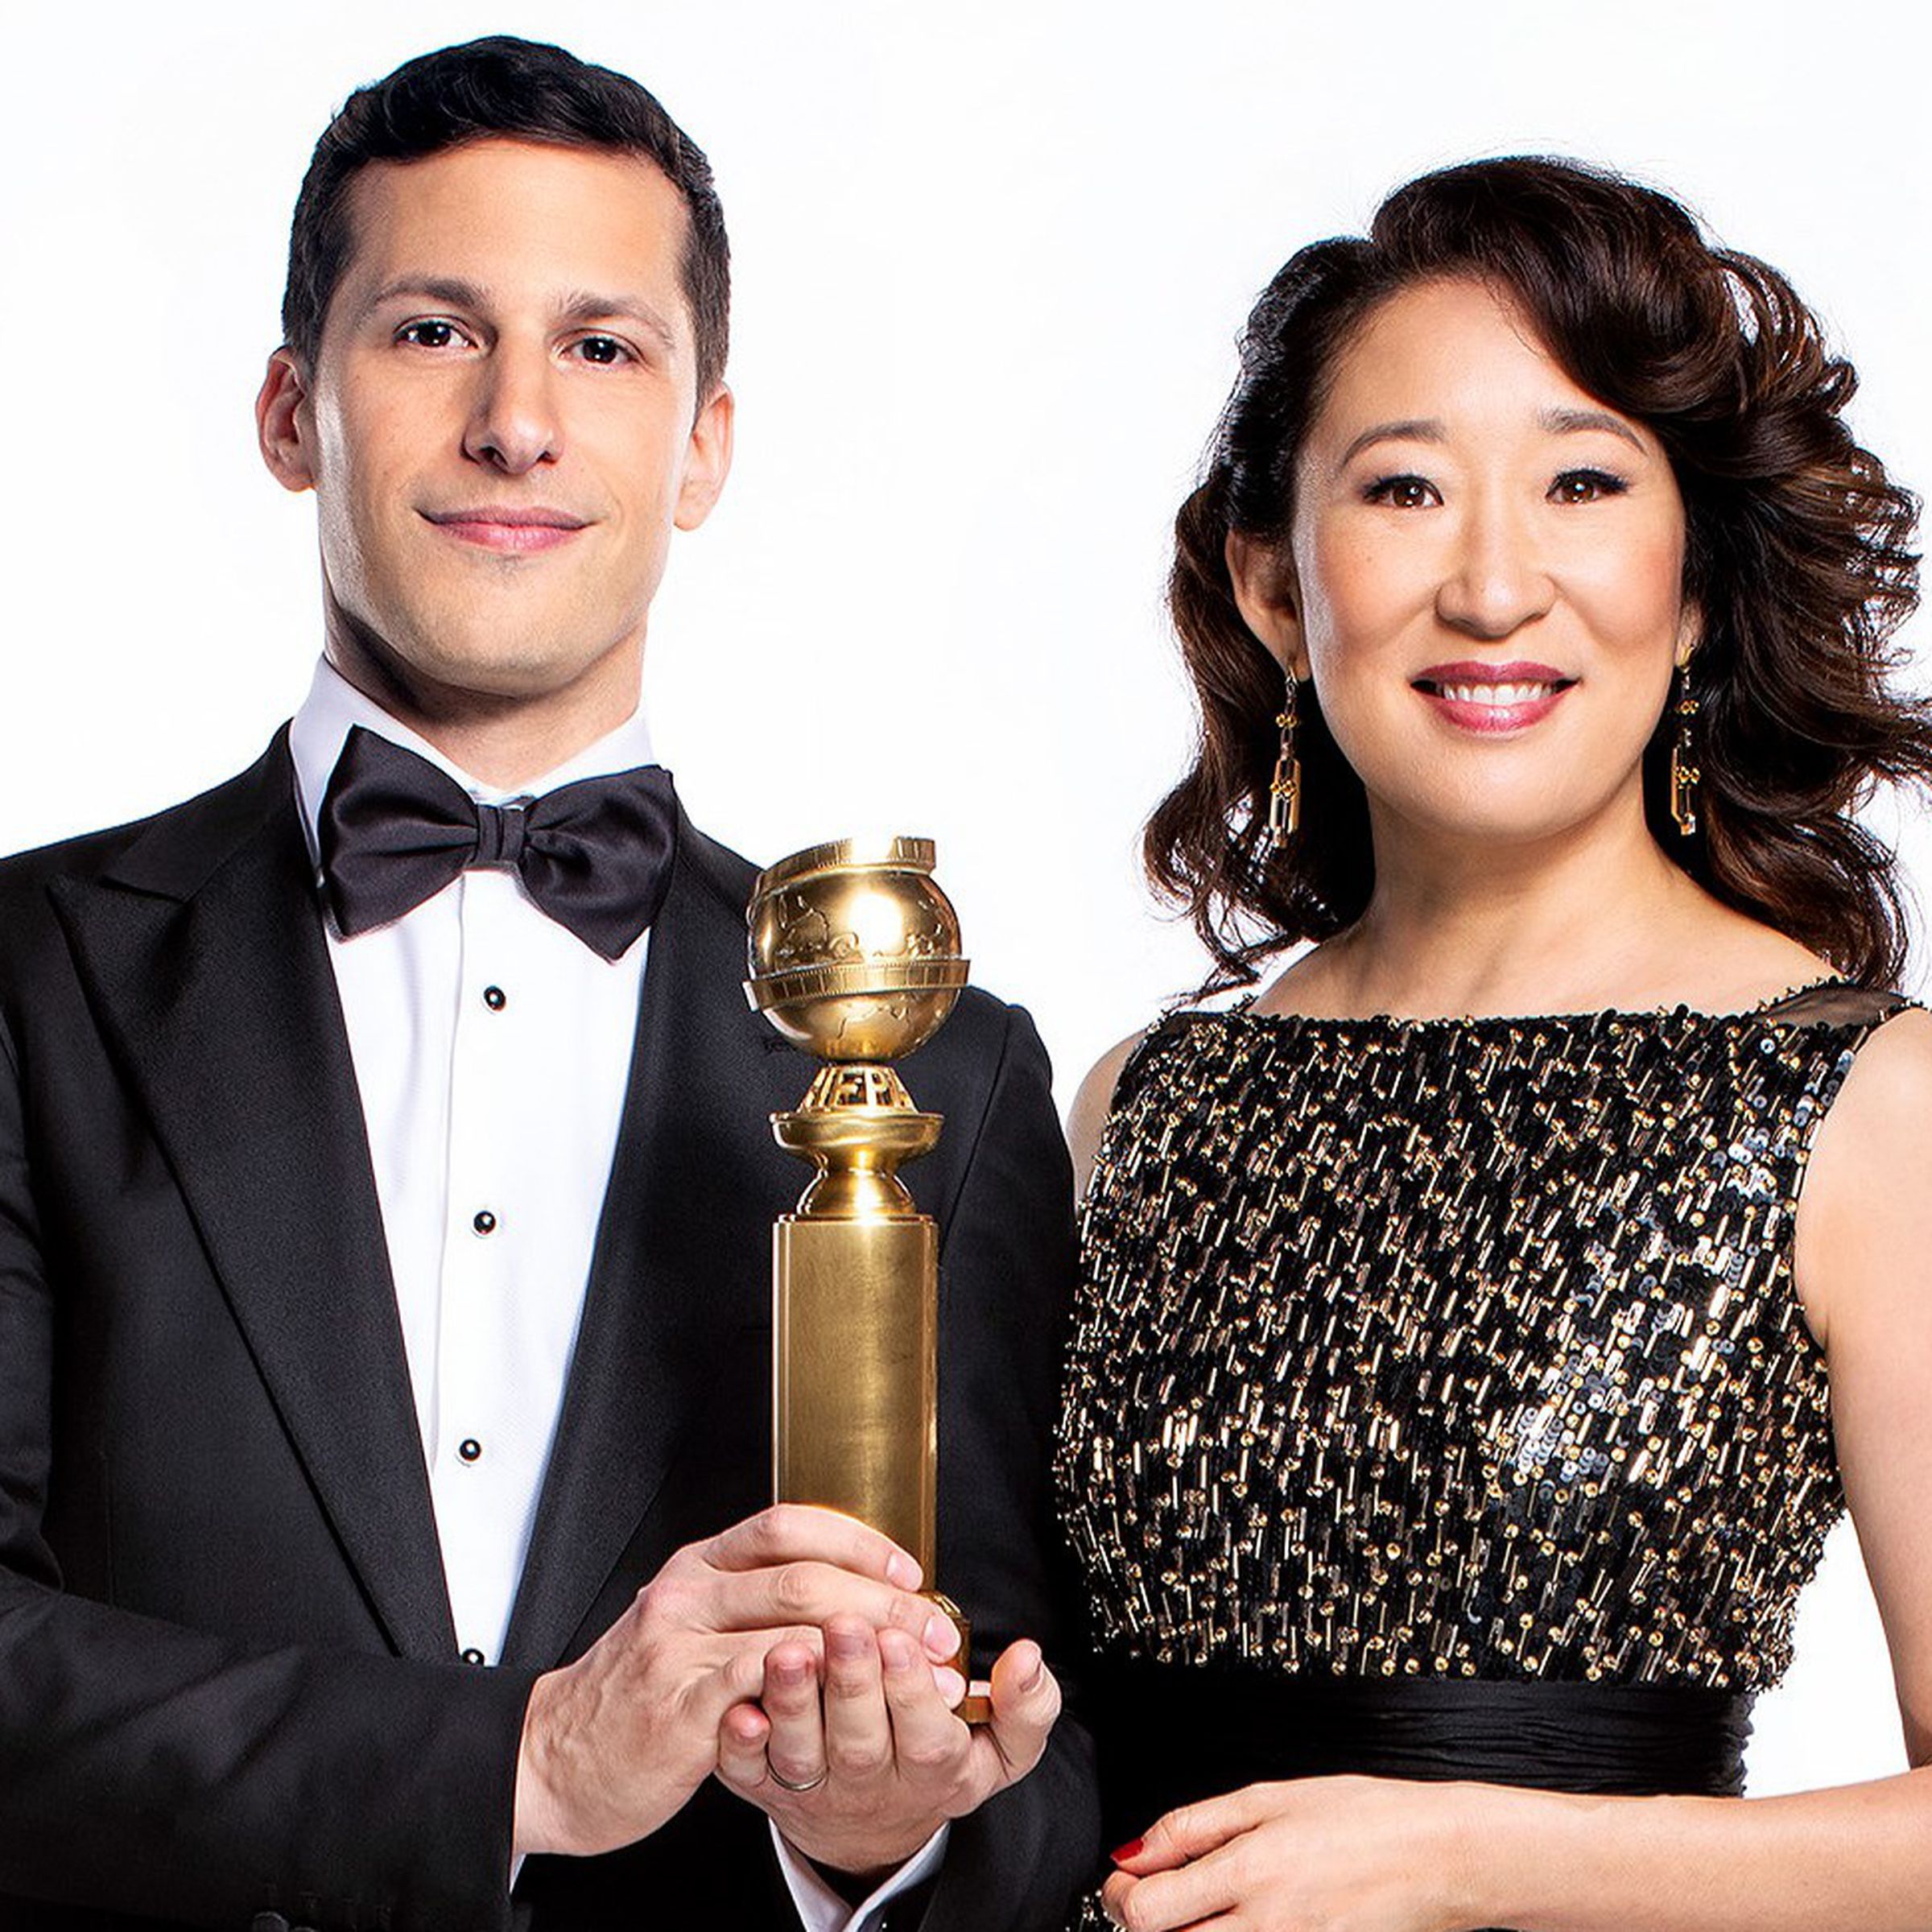 Andy Samberg and Sandra Oh will host the 76th Golden Globe awards